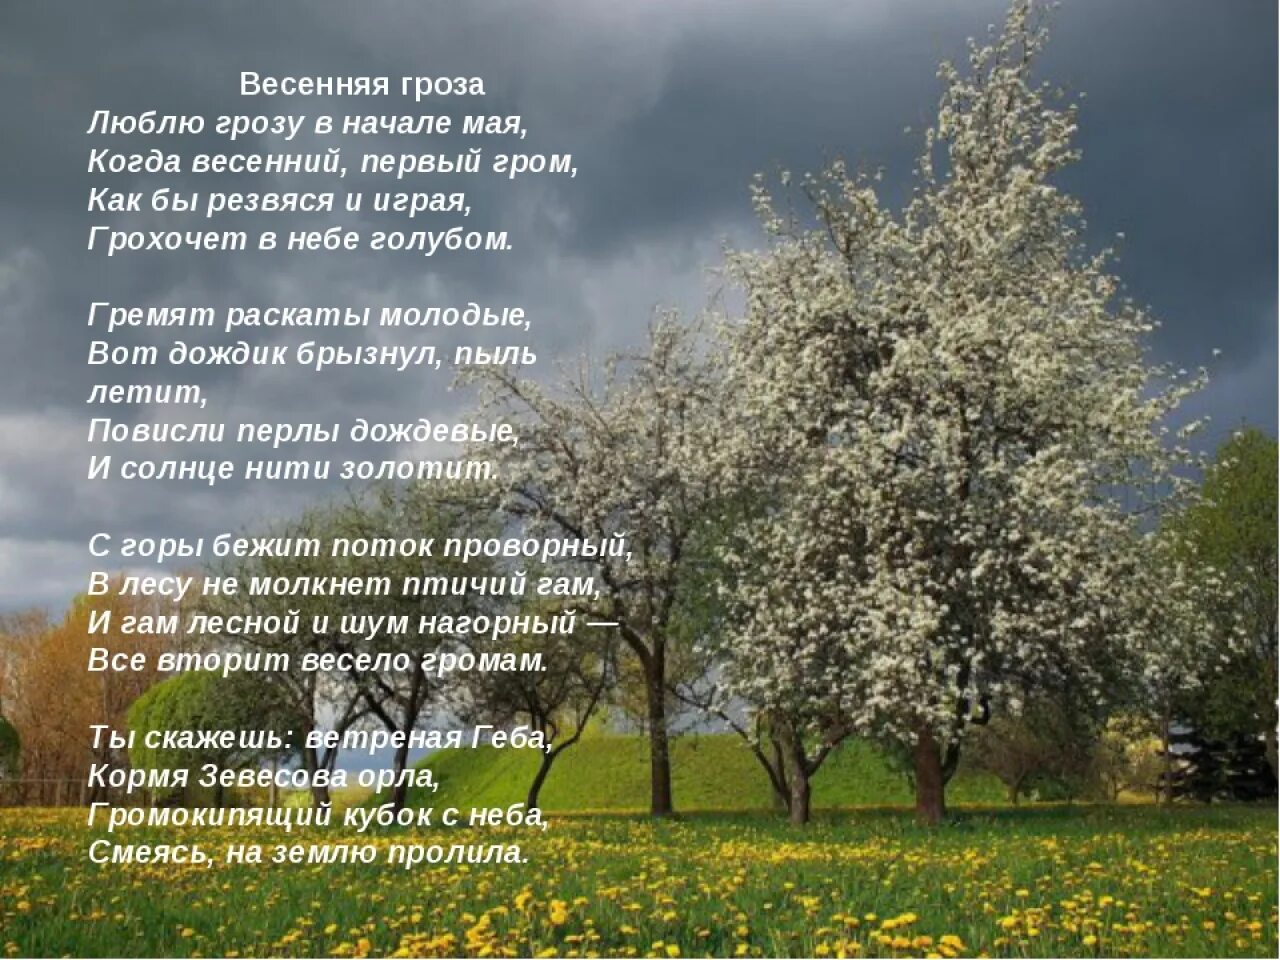 Весенние стихи. Стихи про май короткие. Стих про весну. Люблю грозу в начале мая стихотворение.